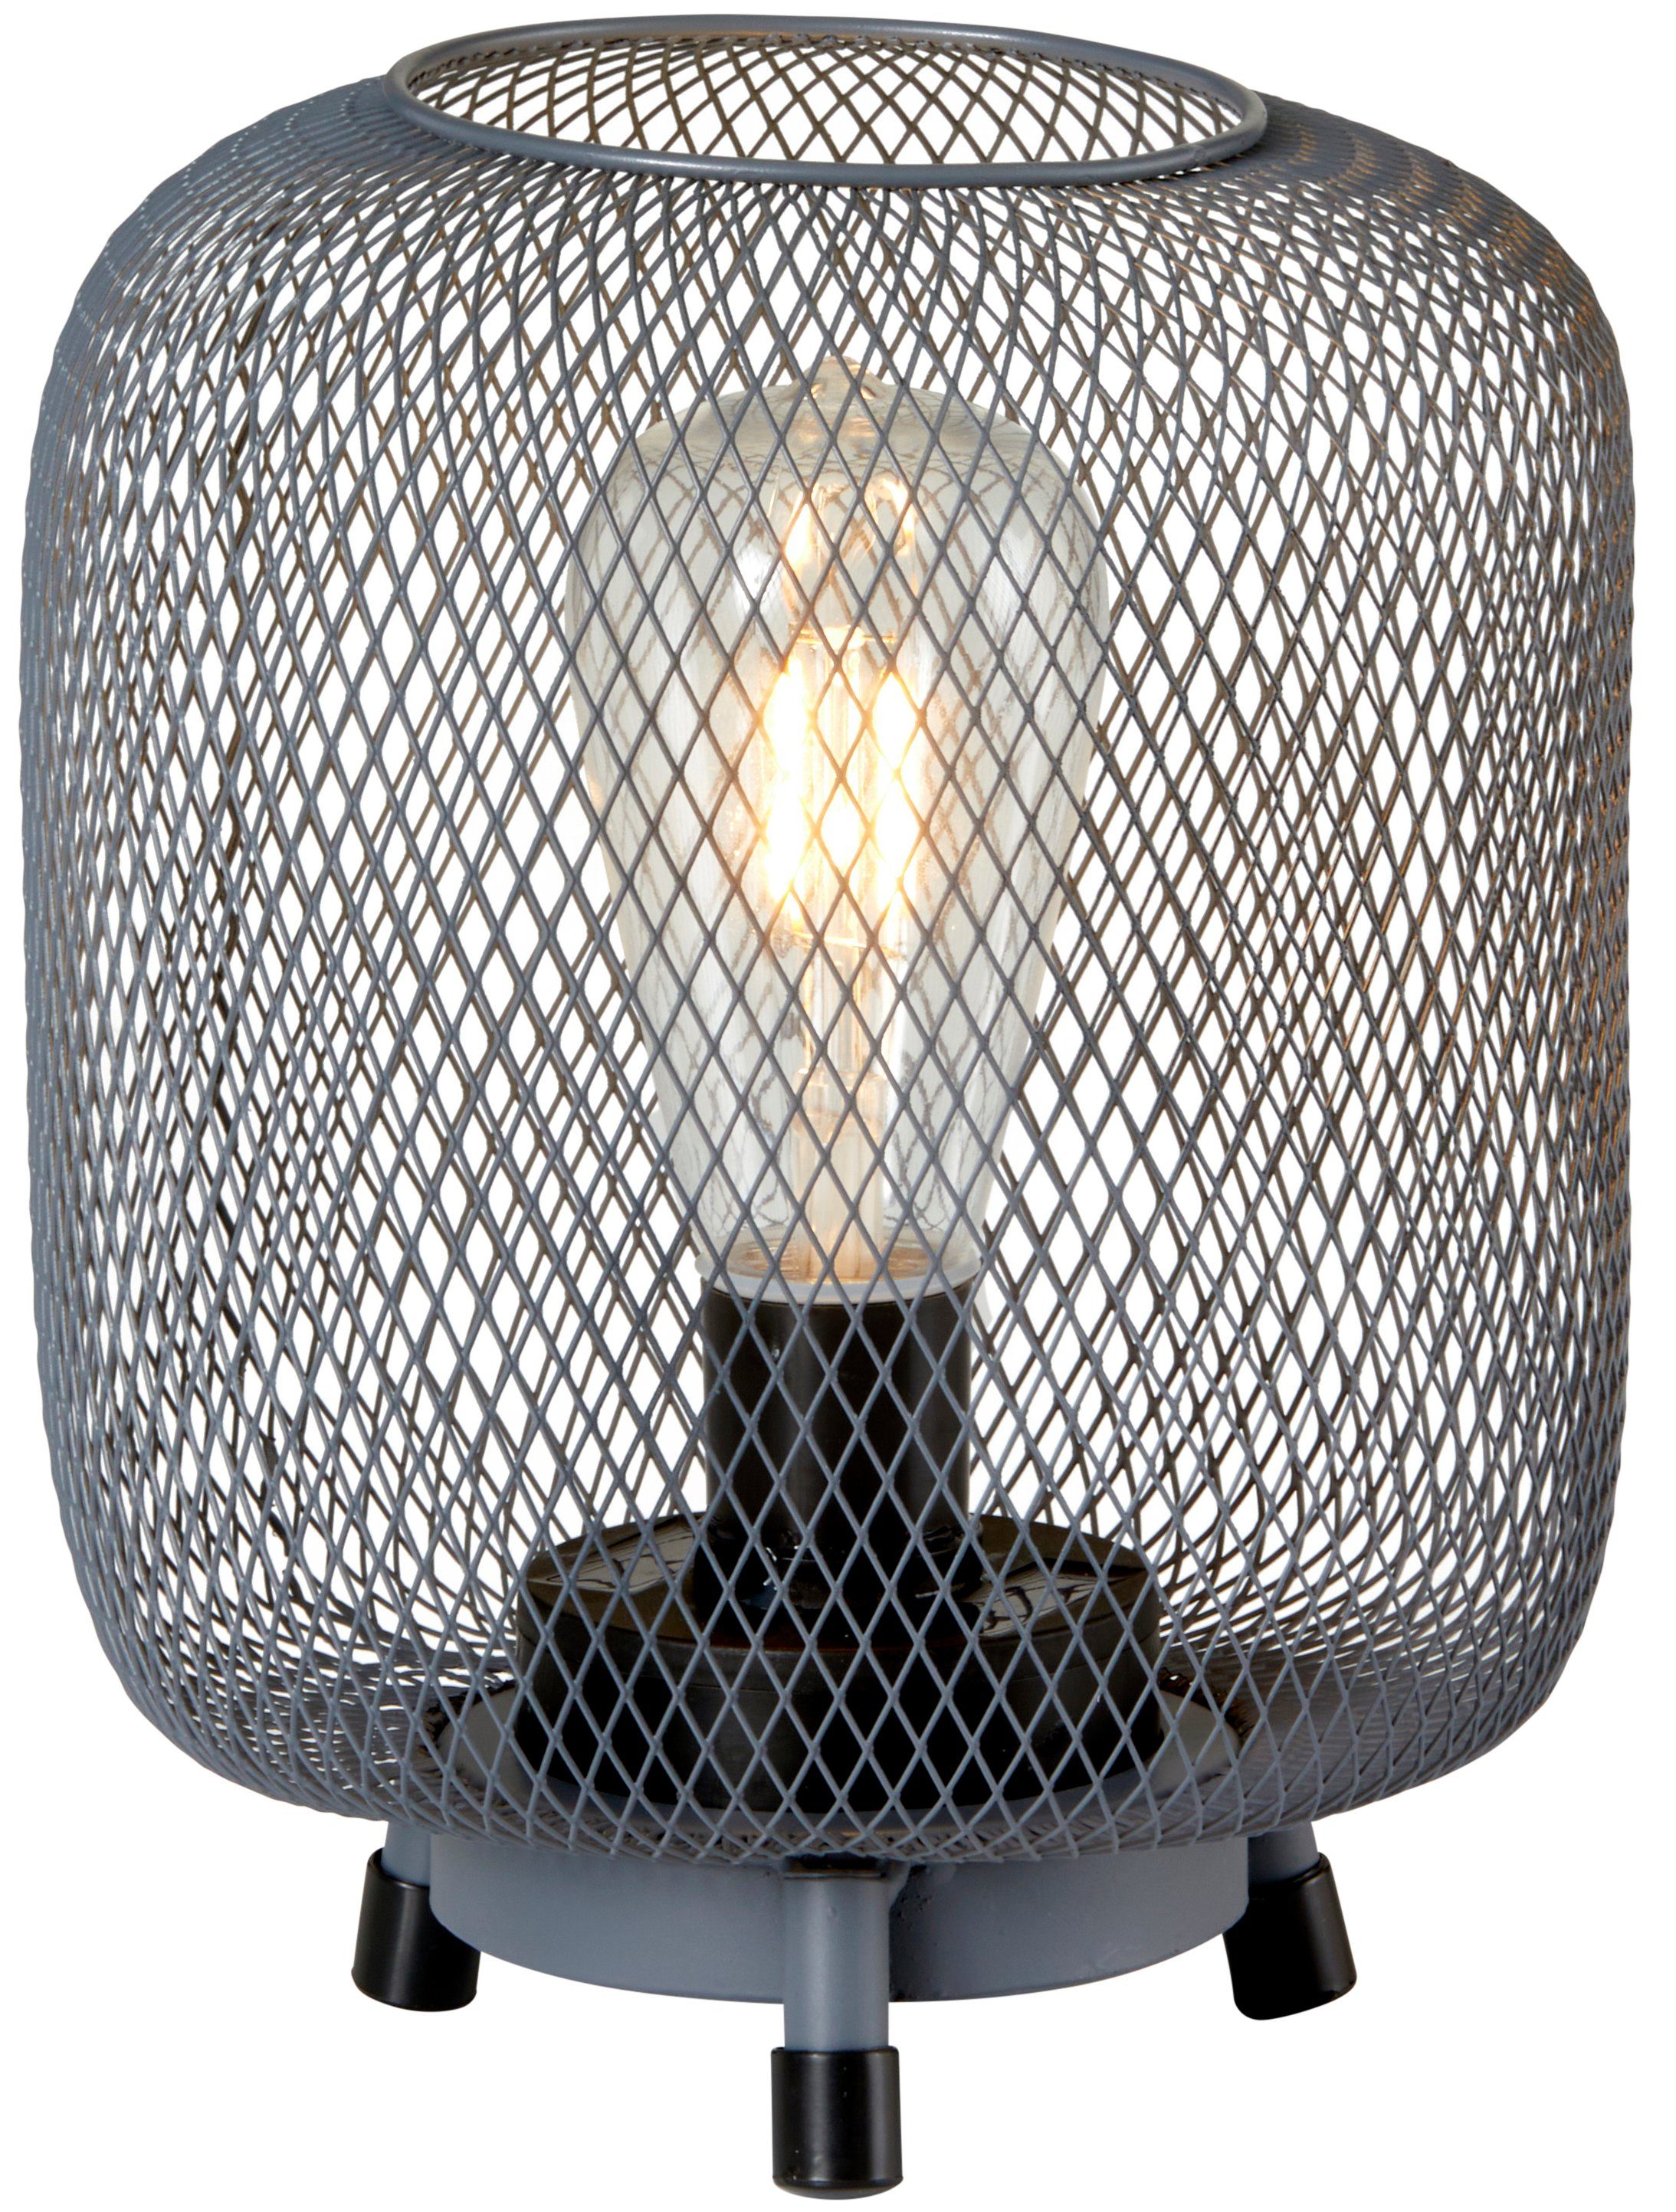 Northpoint Netzoptik Solar warmweißem Außen Tischlampe Stehleuchte LED Stehlampe Solarleuchte anthrazit Licht LED